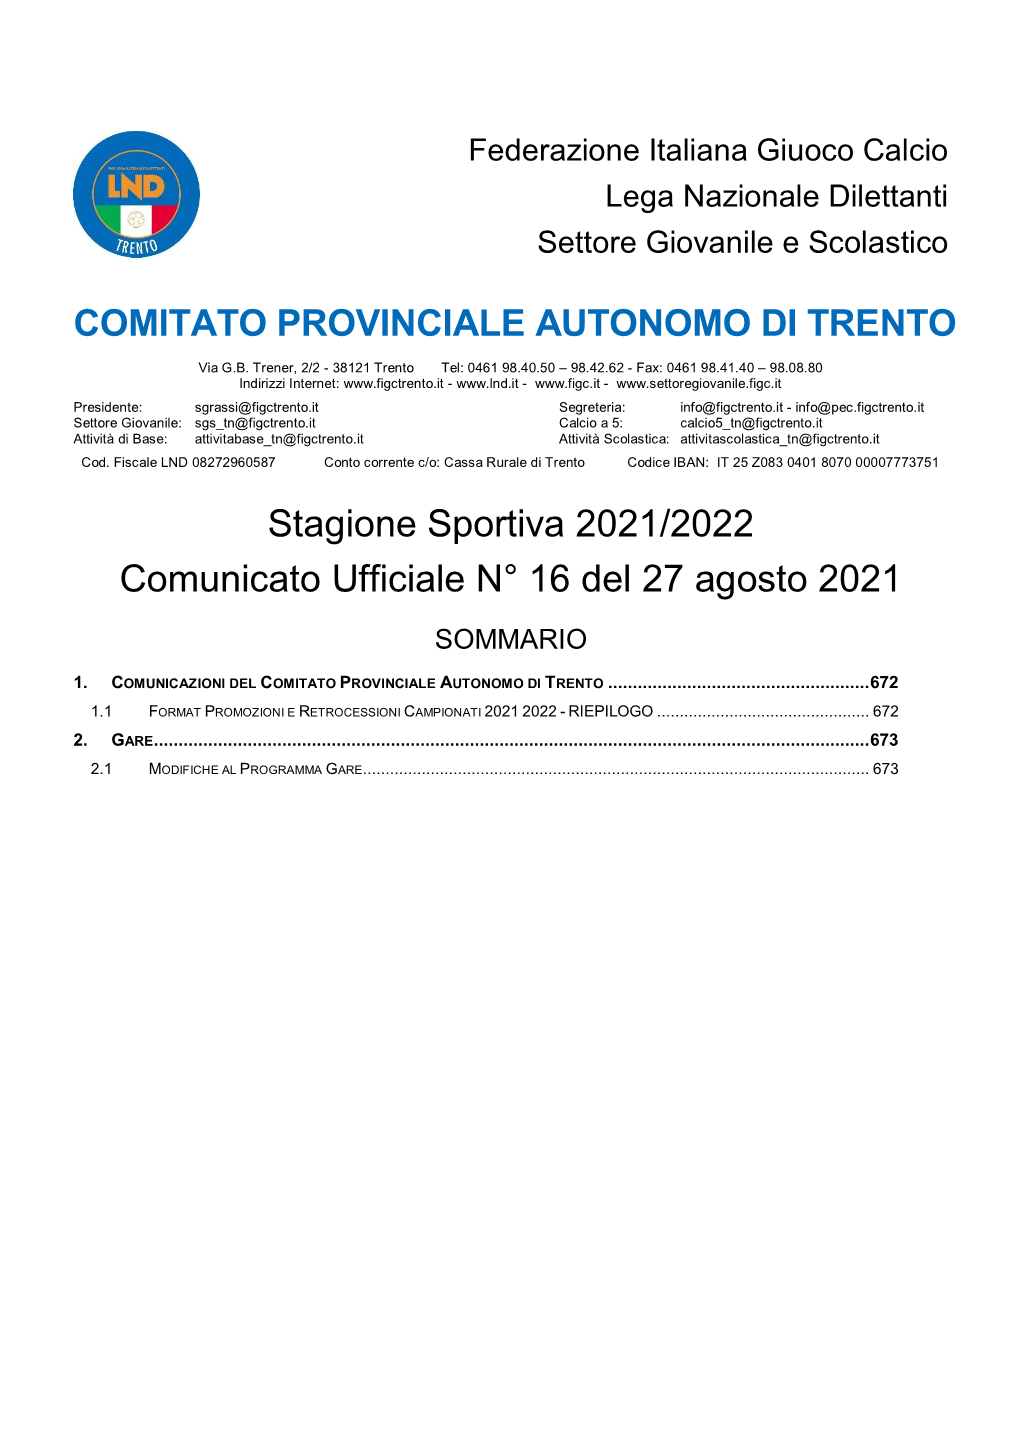 Stagione Sportiva 2021/2022 Comunicato Ufficiale N° 16 Del 27